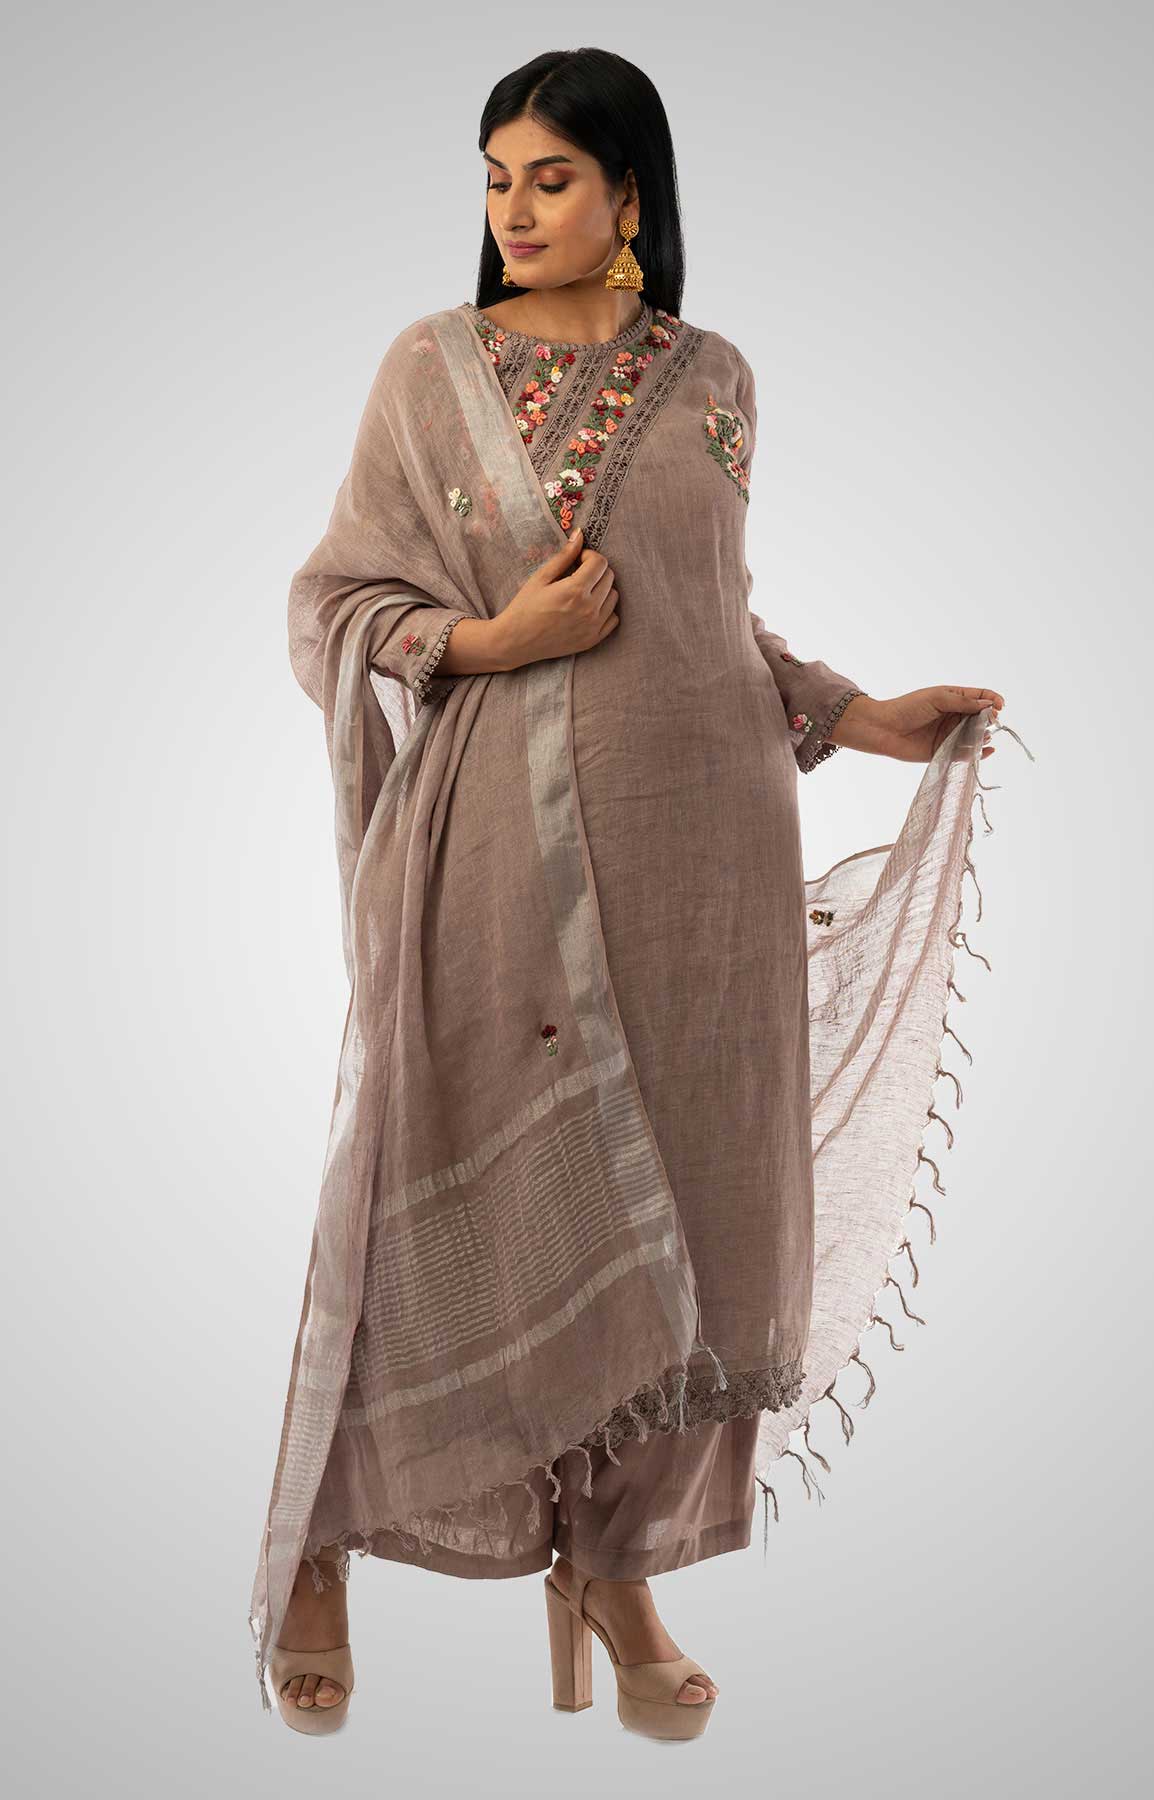 Sand Beige Linen Suit With Handloom Linen Duppatta Adorned With Resham Work – Viraaya By Ushnakmals